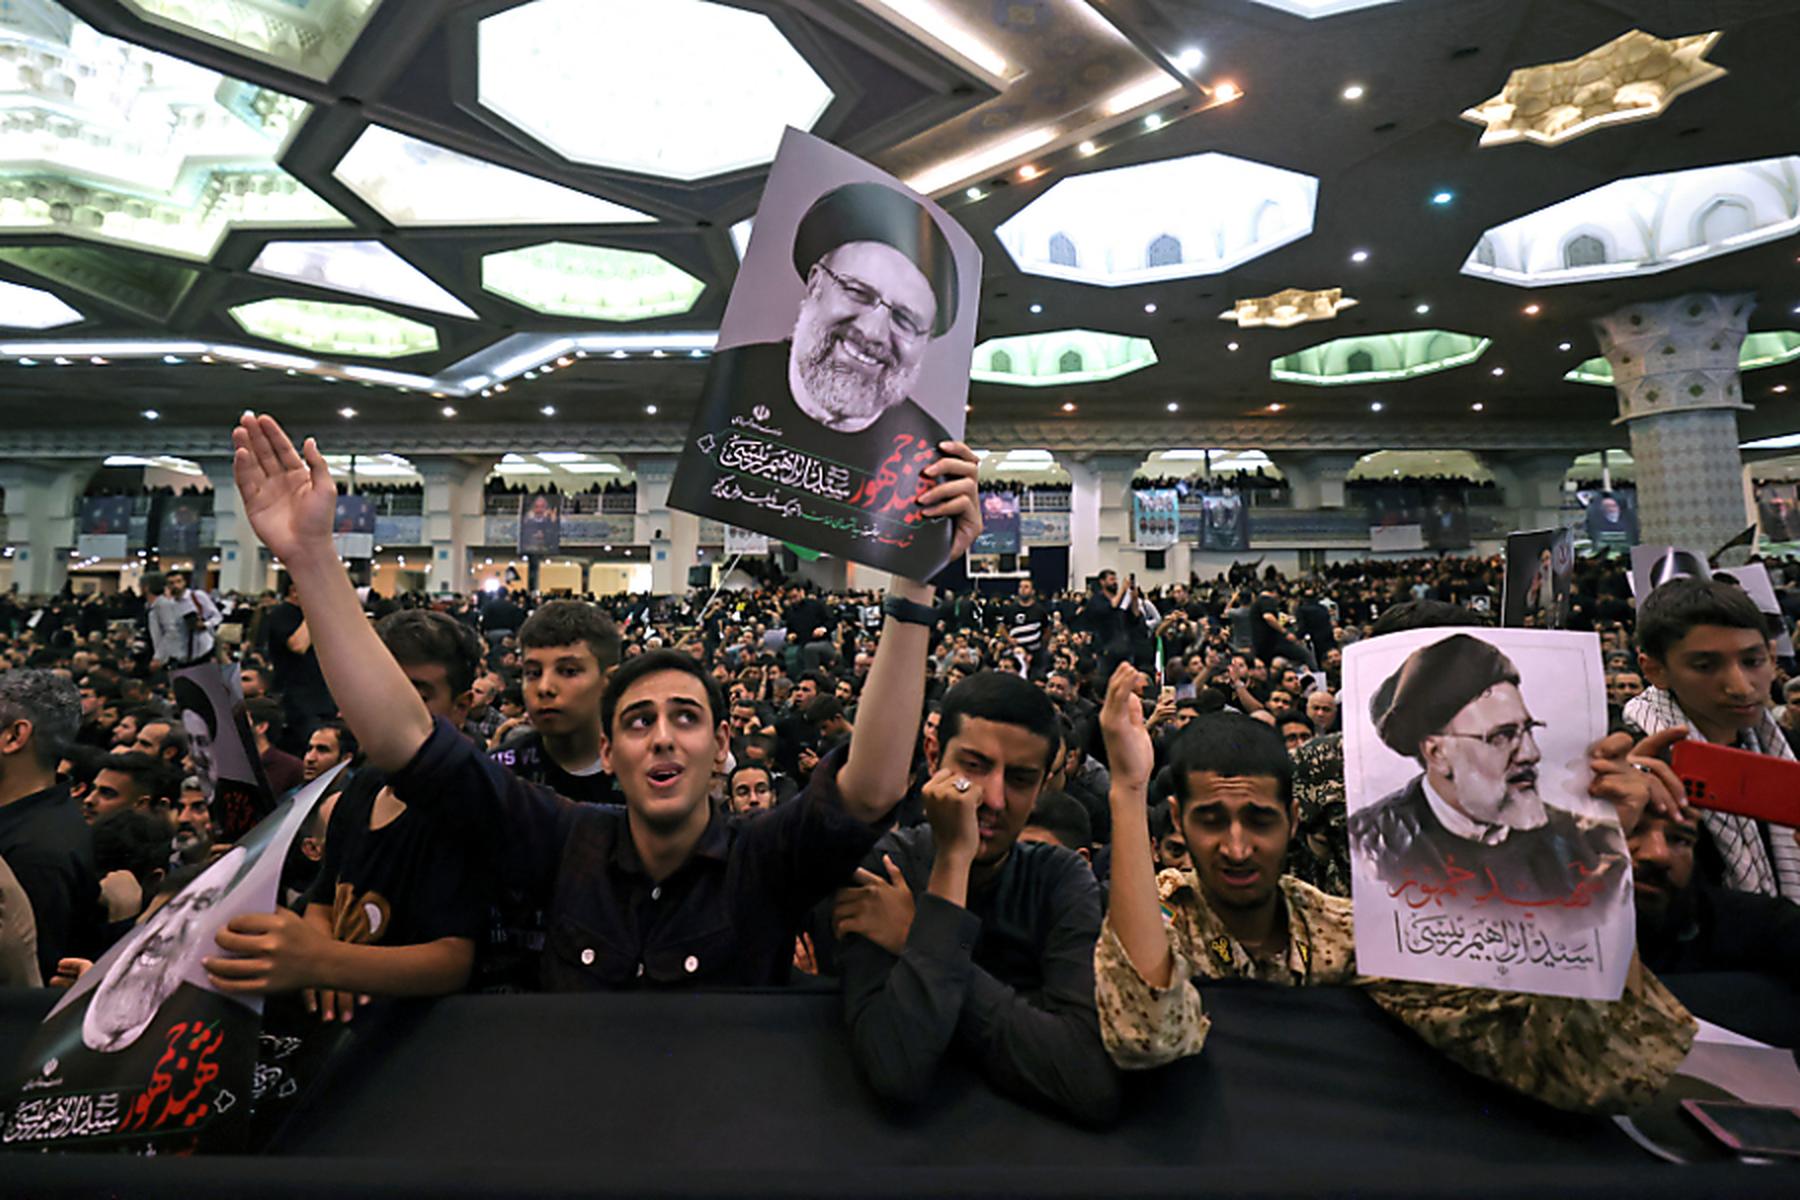 Teheran: Zigtausende trauern in Teheran um verunglückten Präsidenten